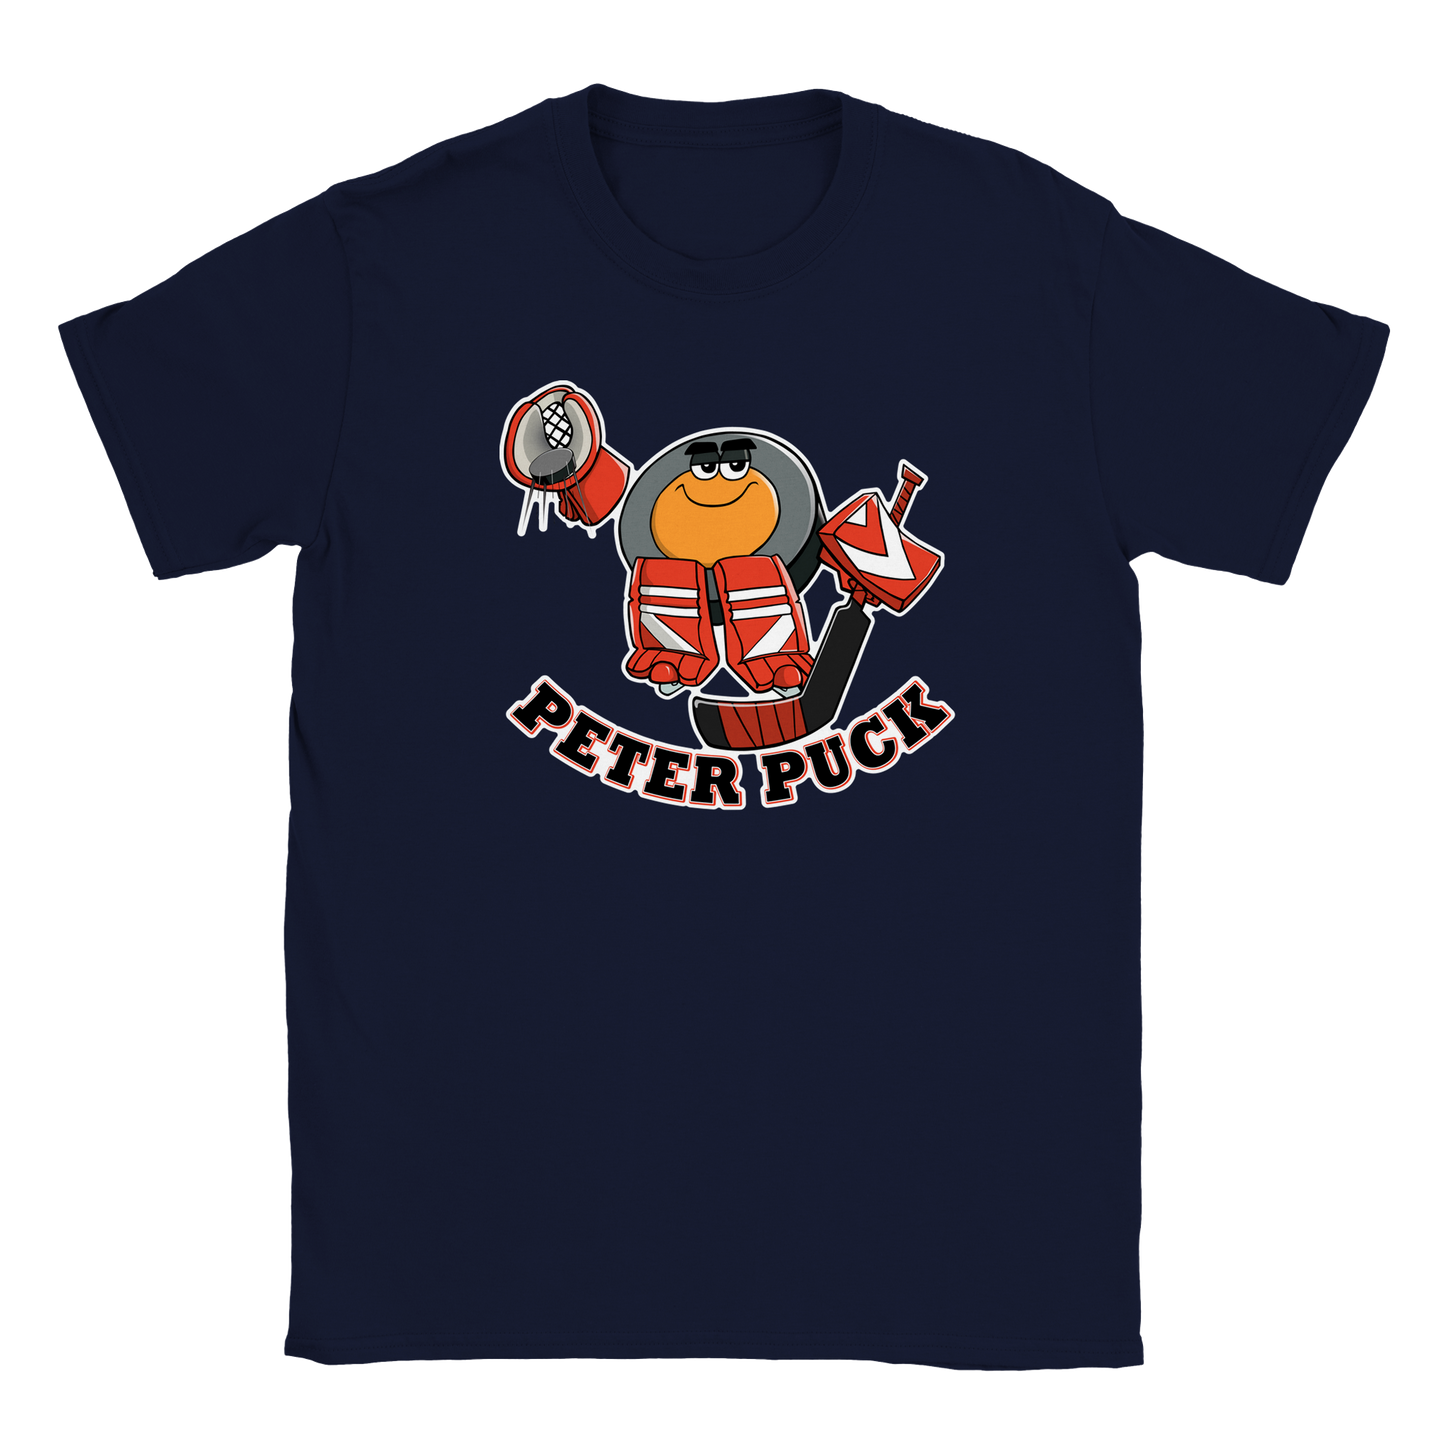 Peter Puck Goalie Save Classic Kids Crewneck T-shirt